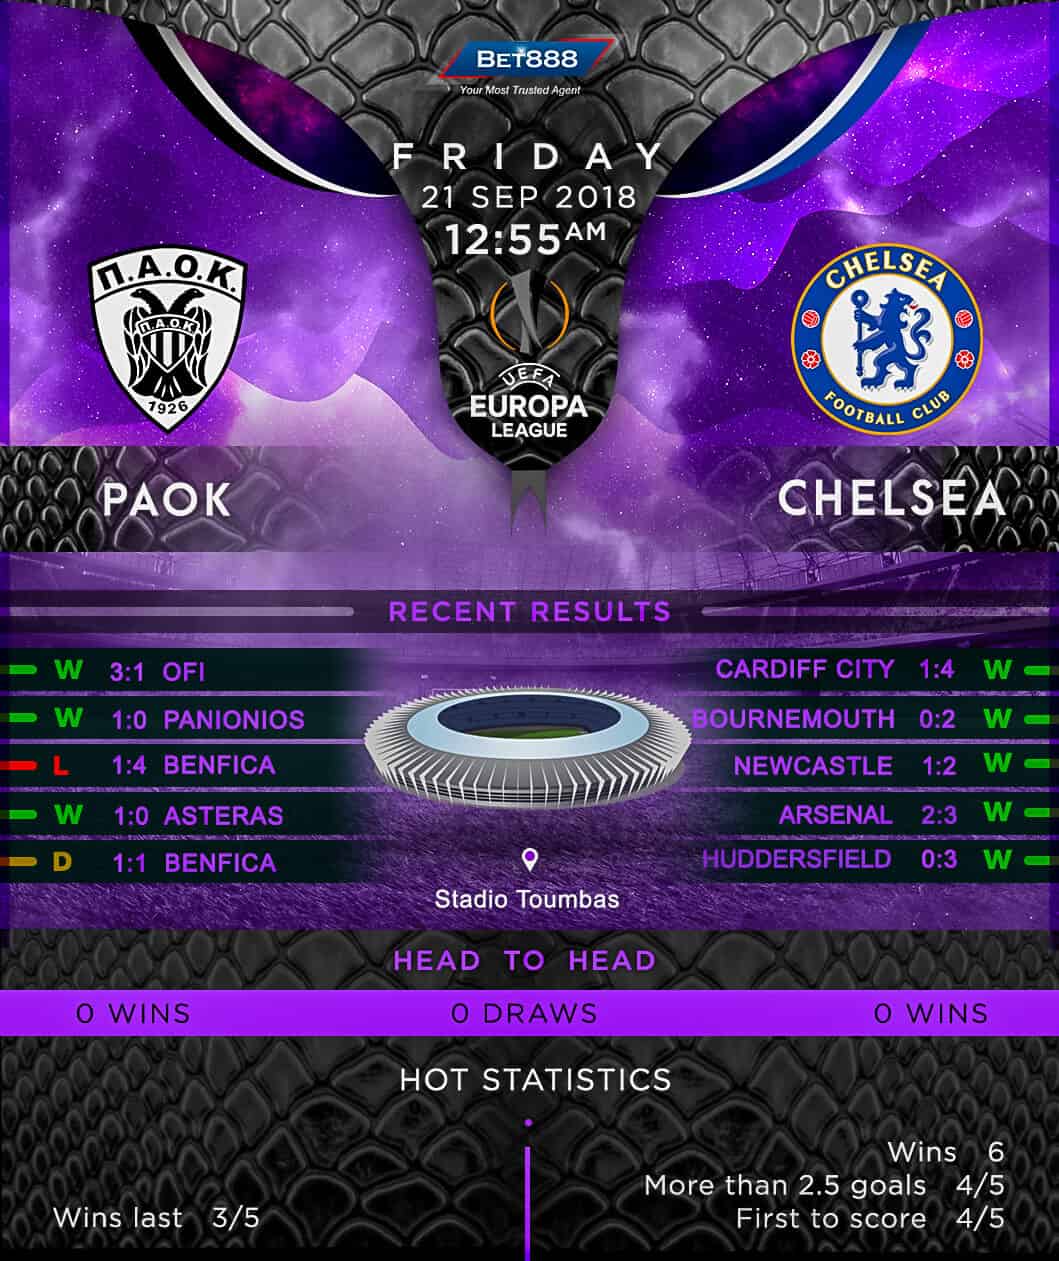 PAOK vs Chelsea 21/09/18